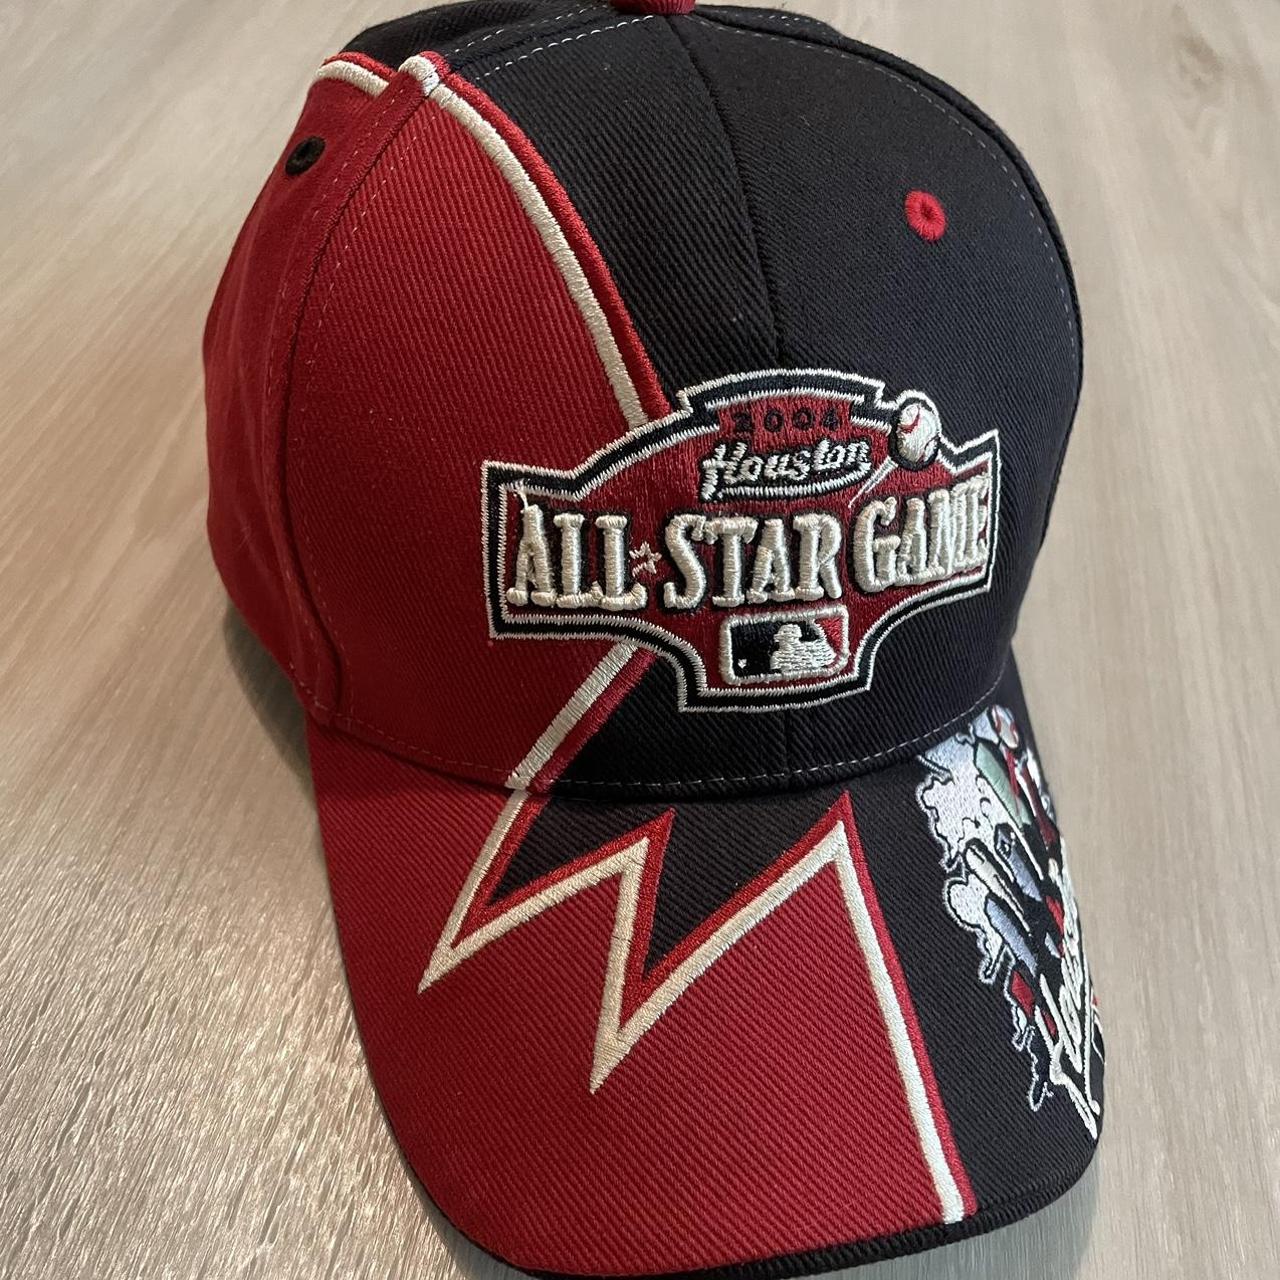 Vintage Houston Astros All Star Game Skyline Hat. - Depop